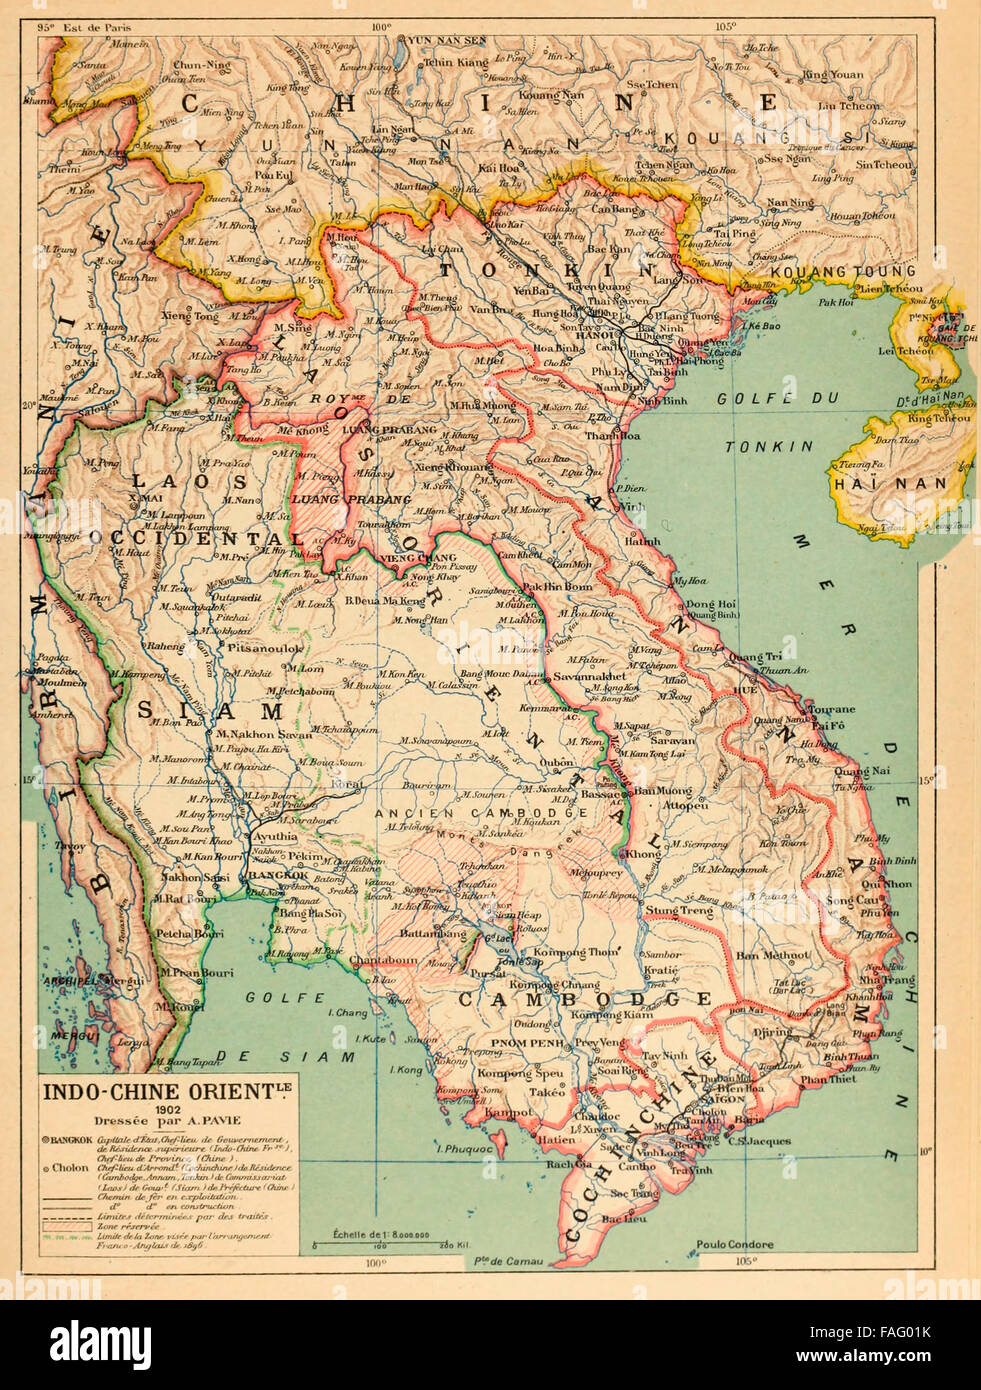 Indo-Chine Orient - Mapa de la Indochina francesa, en 1890. Texto en francés Foto de stock